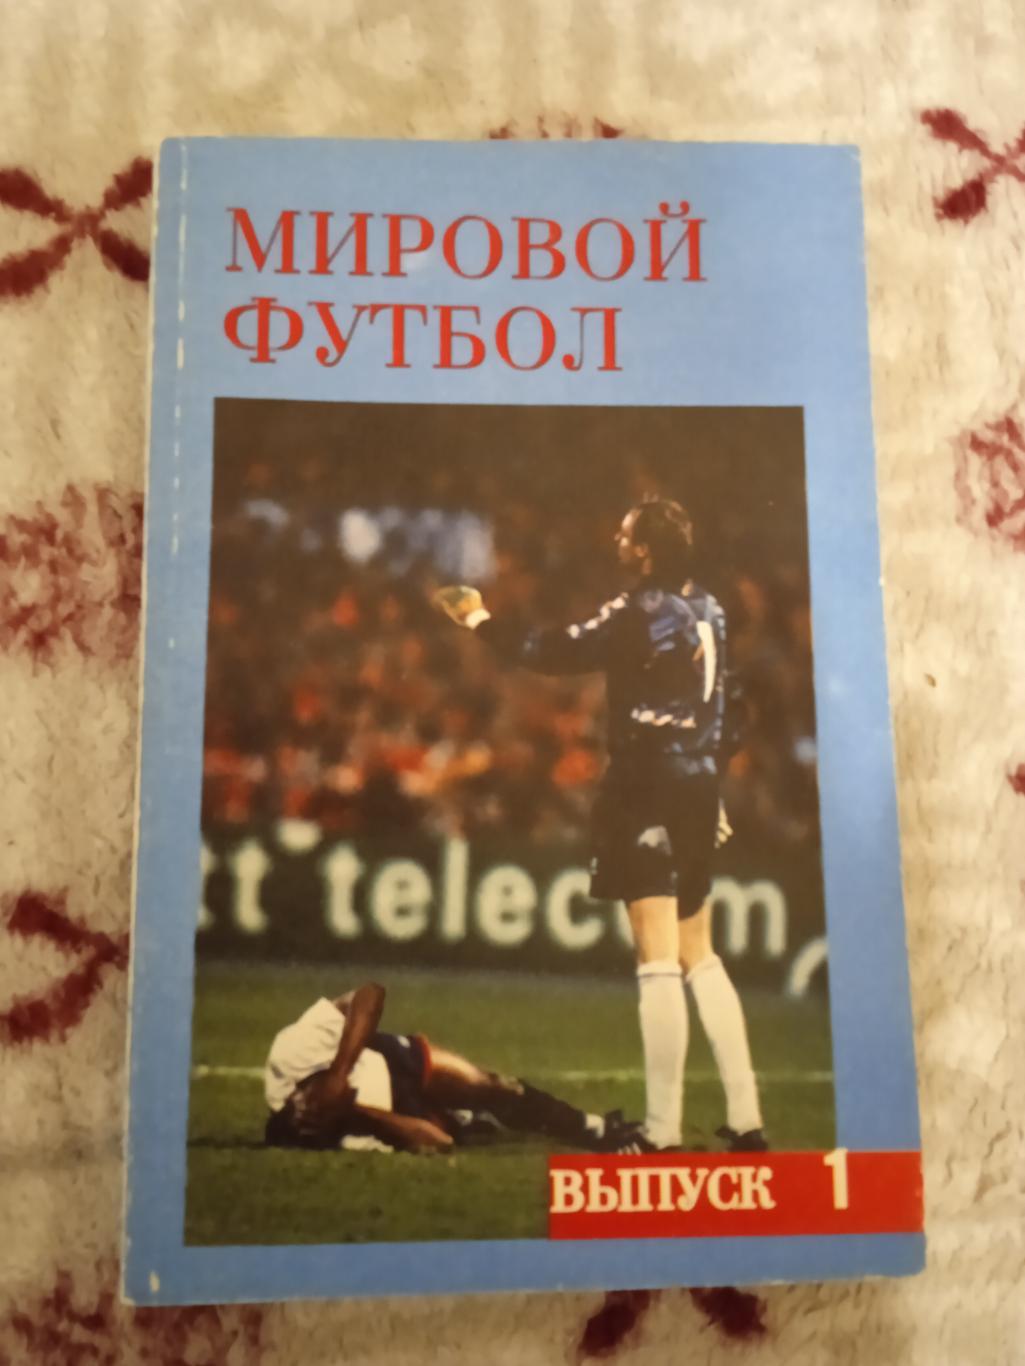 А.Кобеляцкий.Мировой футбол 1992-1993.Выпуск 1.Москва 1994 г.